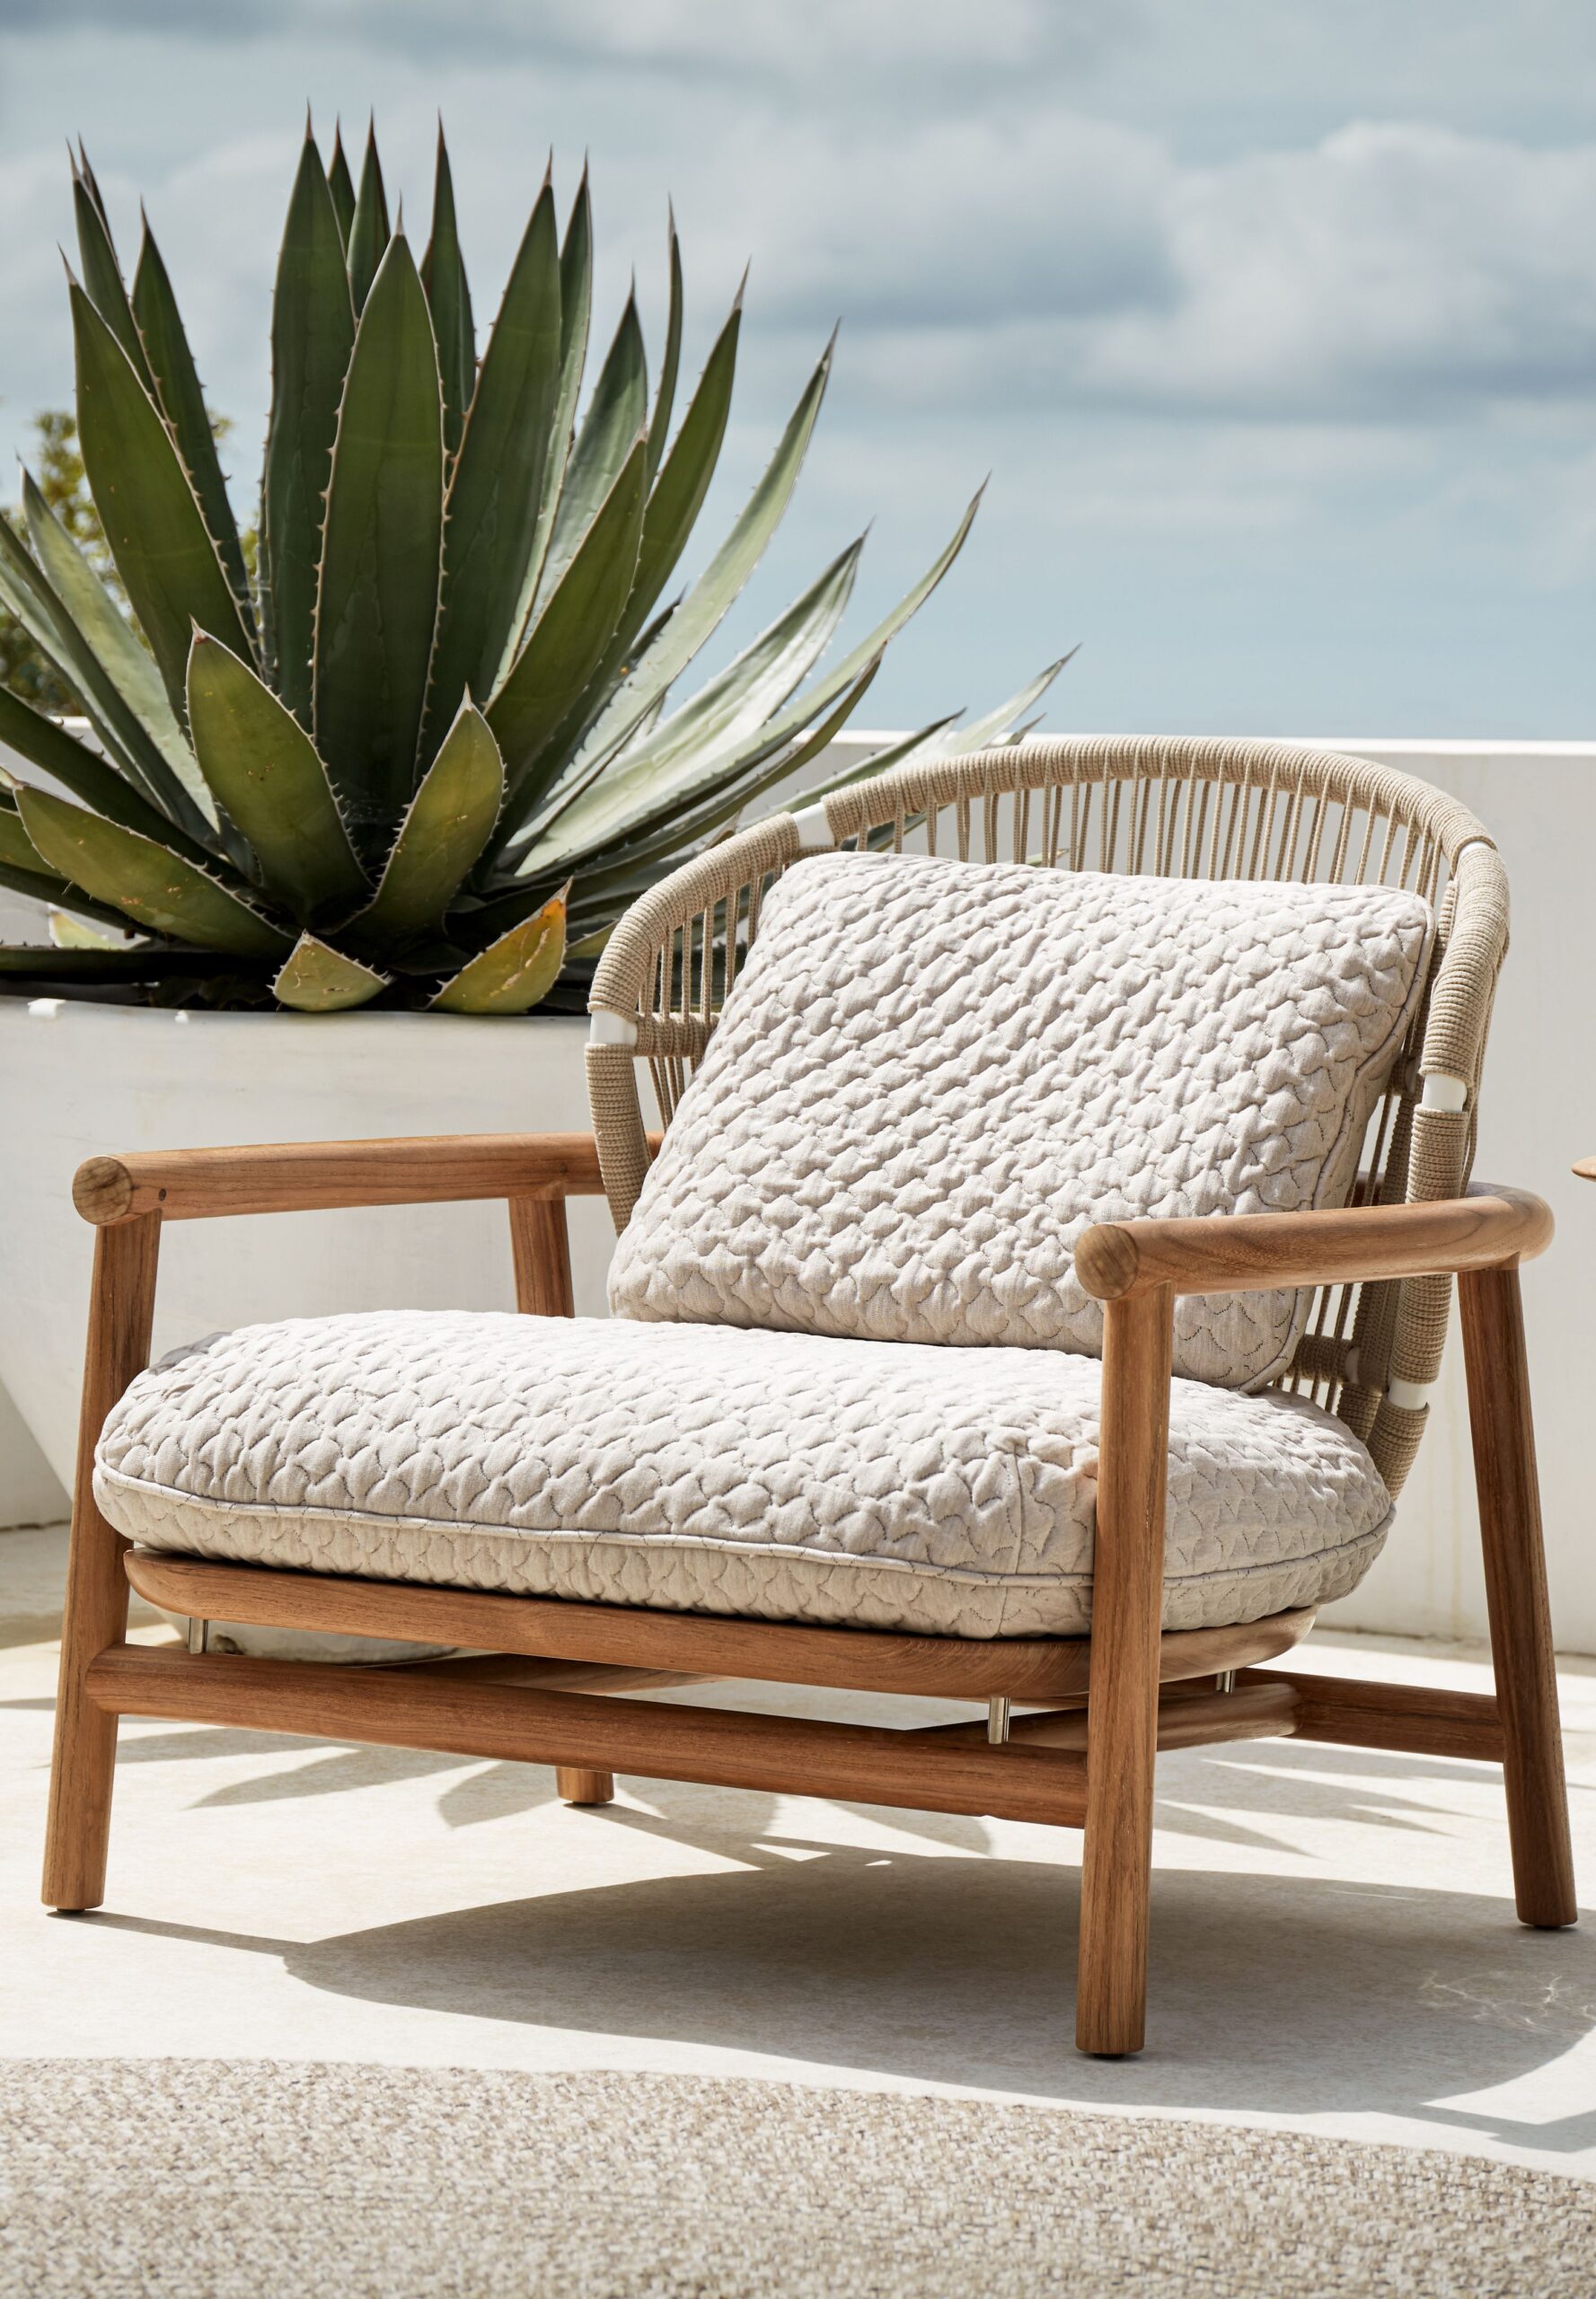 Outdoor Comfort: Exploring the Versatility of Outdoor Chairs